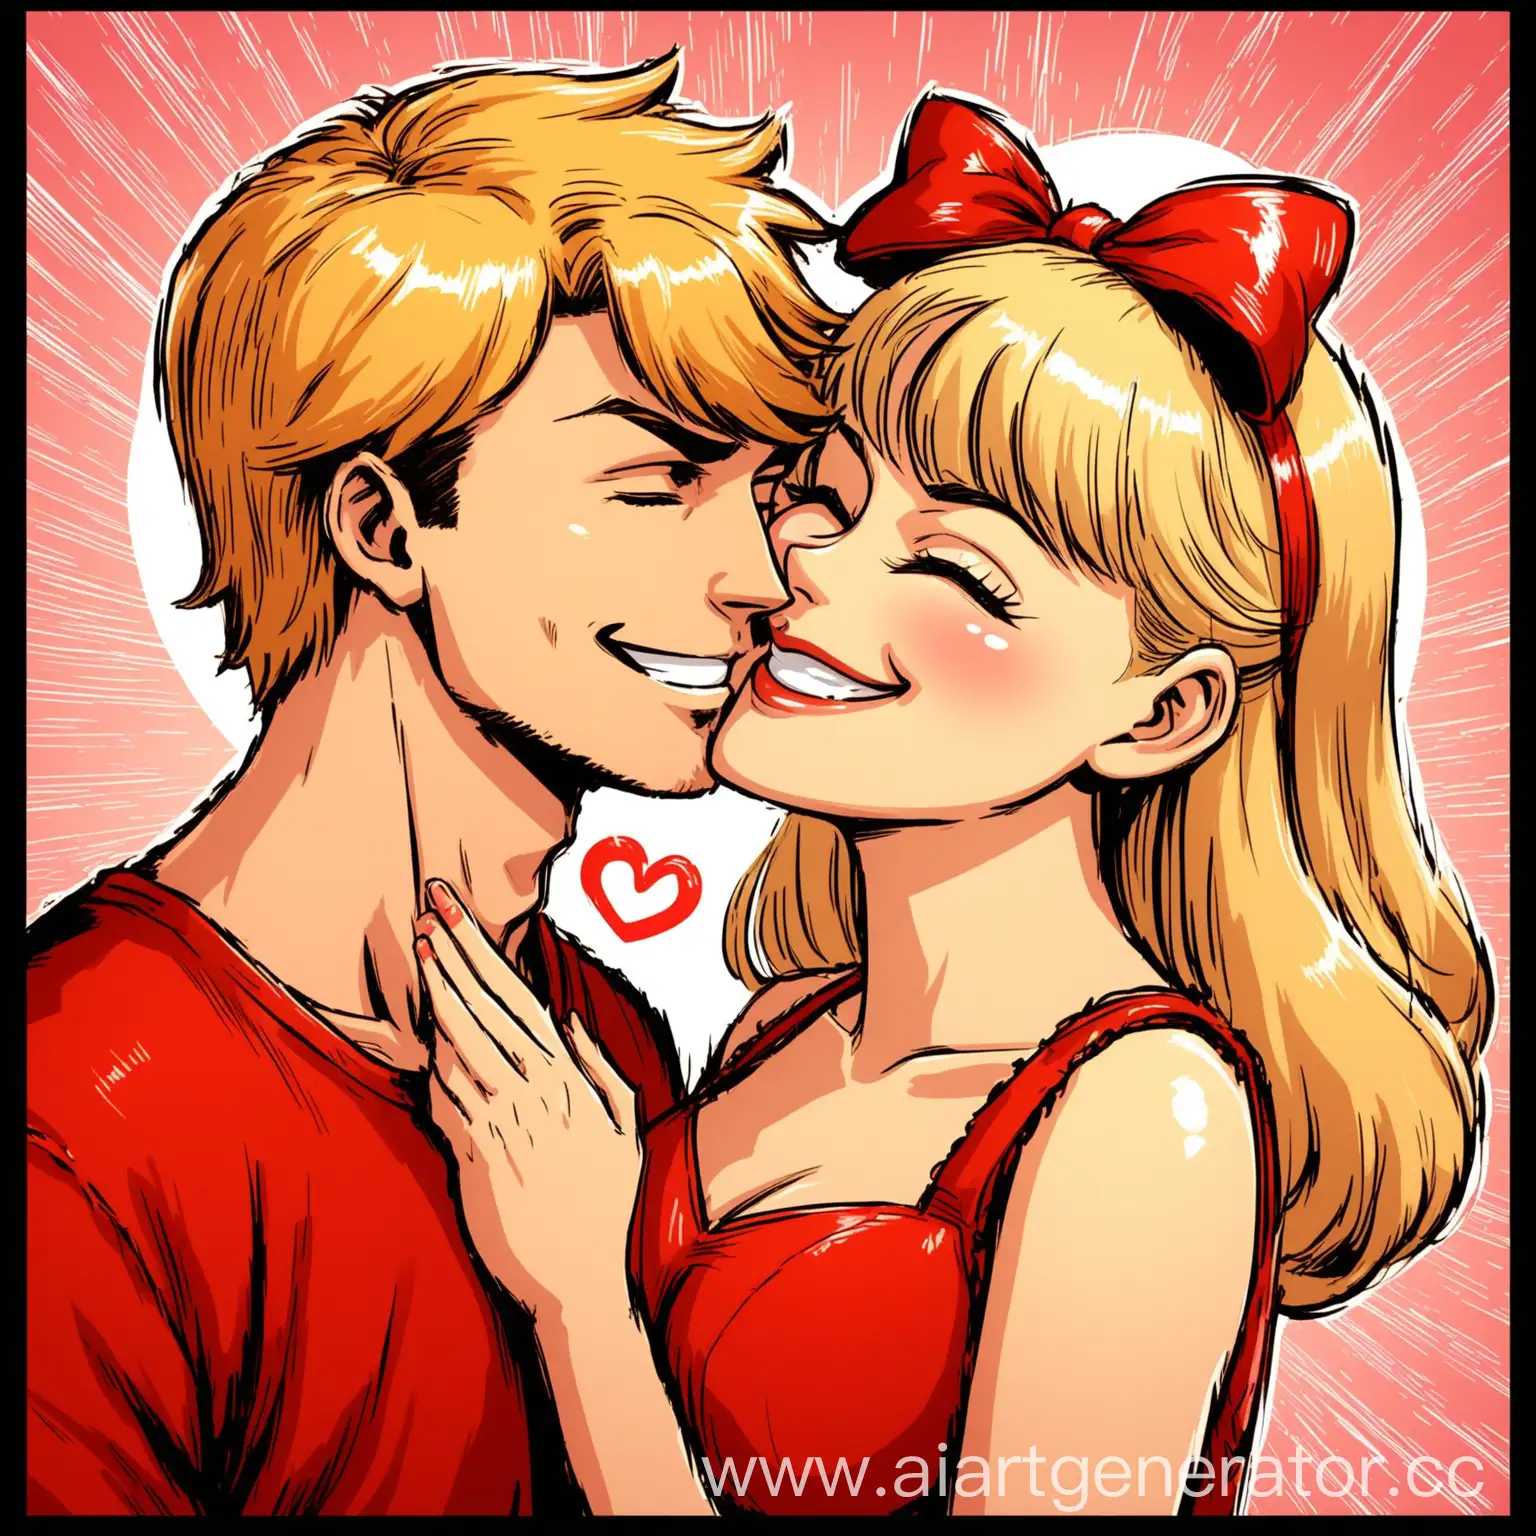 девочка в красном сарафане, в красном банте на голове посылает красными губами поцелуй в виде сердца парню, главный герой молодой парень блондин в стиле комикса, с широкой улыбкой и надменной ухмылкой и прищуренным взглядом